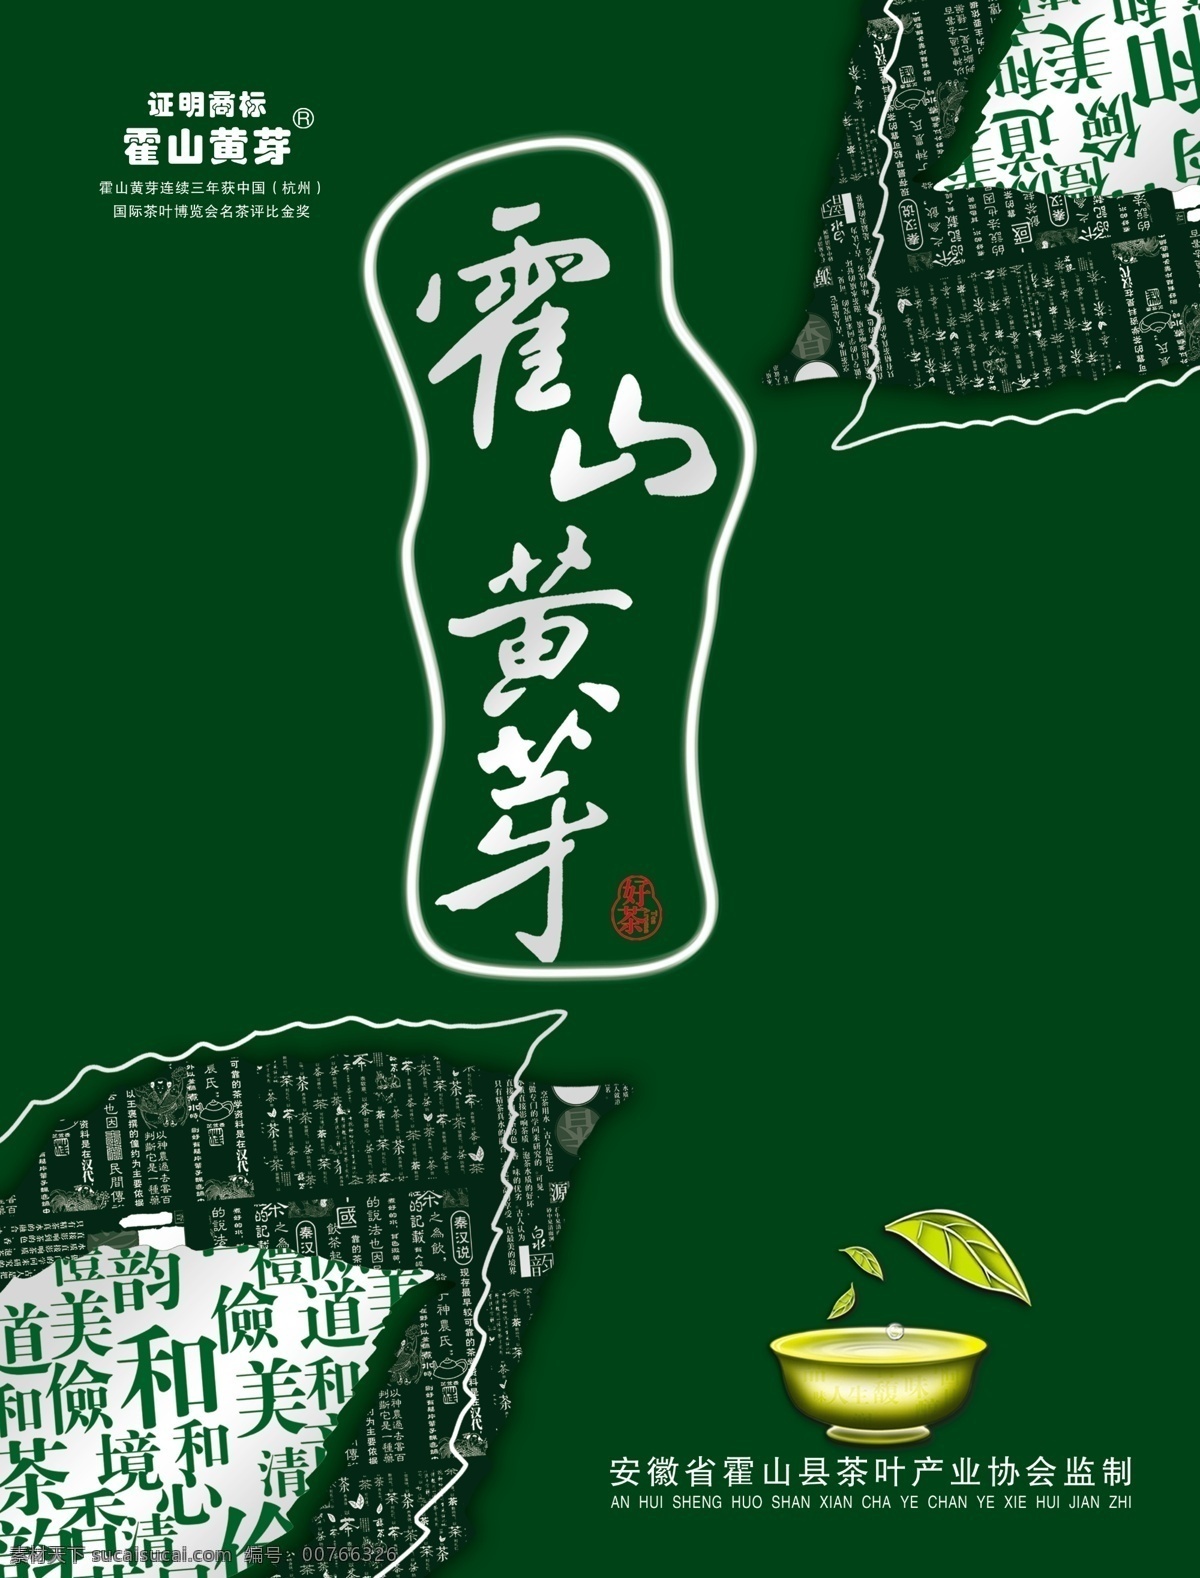 霍山黄芽 茶 礼盒 包装 文化 创意 文化艺术 传统文化